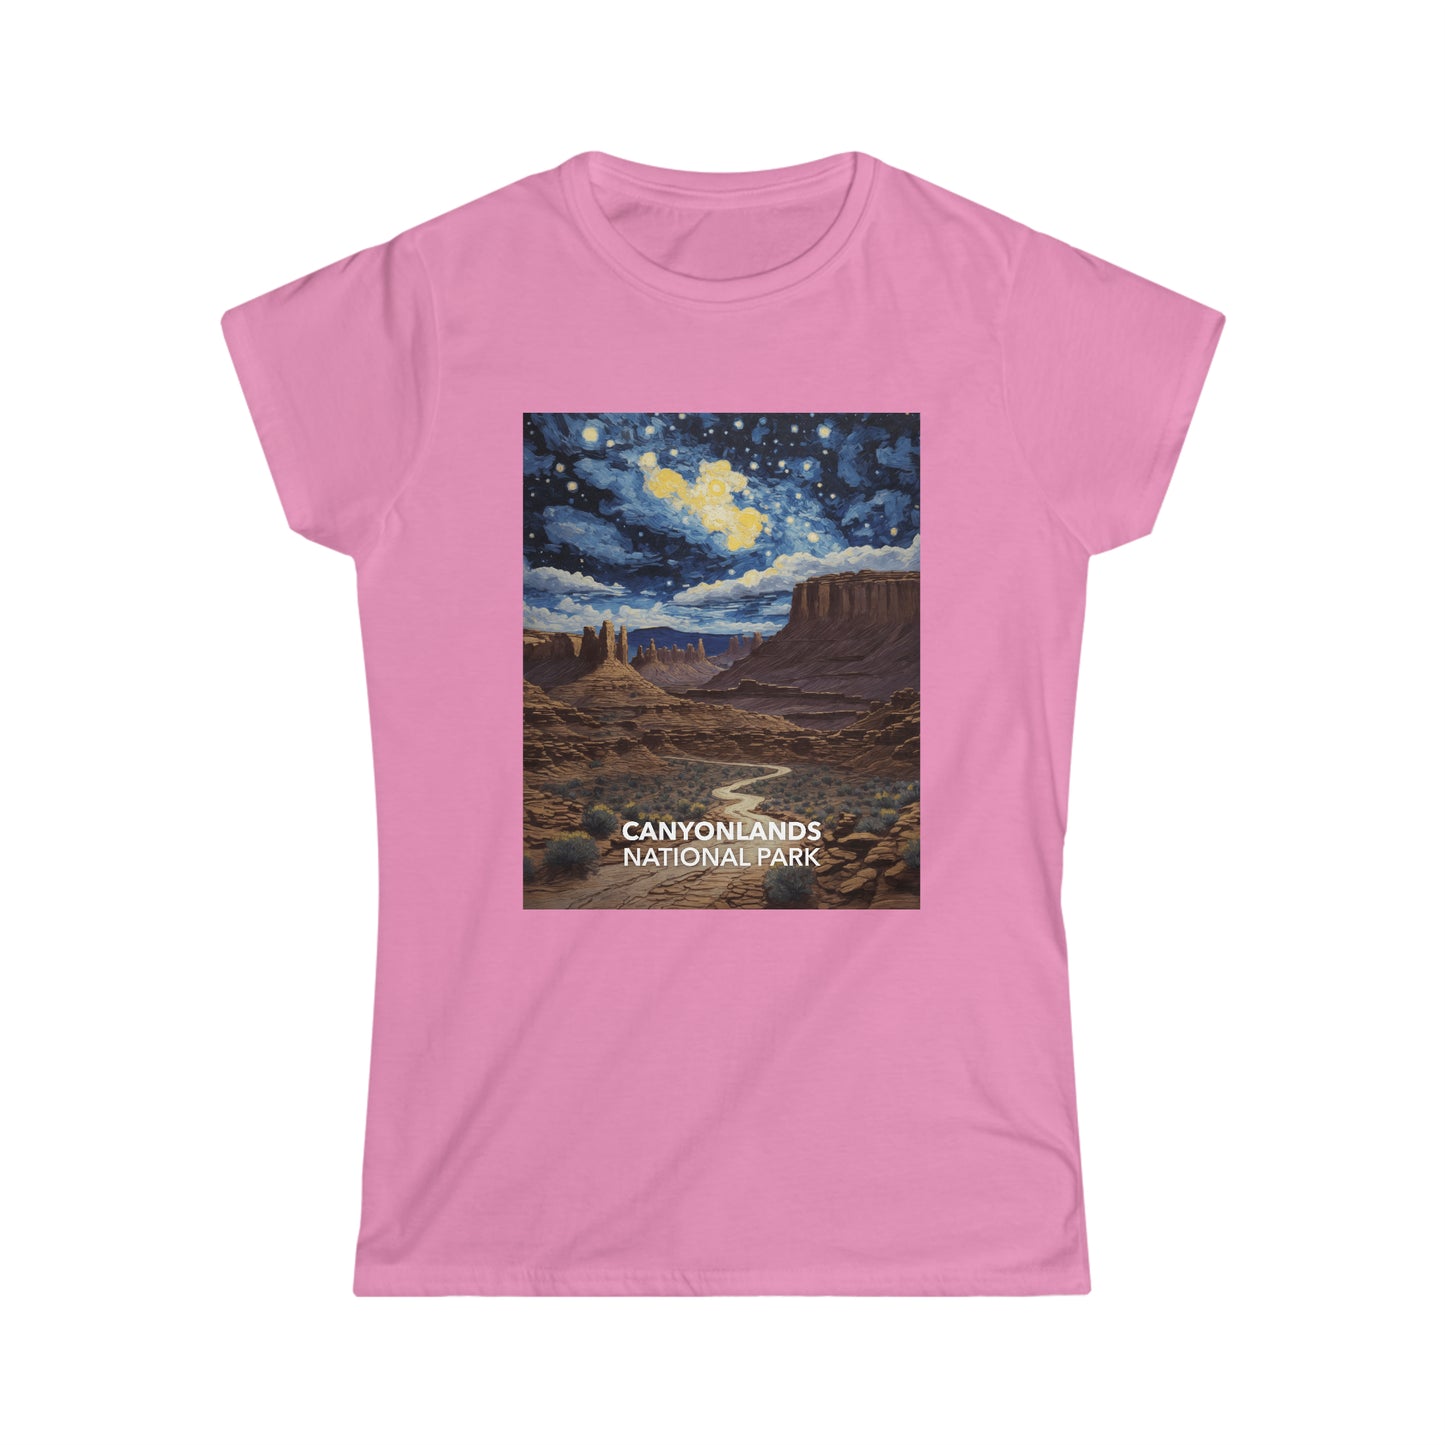 Canyonlands National Park T-Shirt - Women's Starry Night